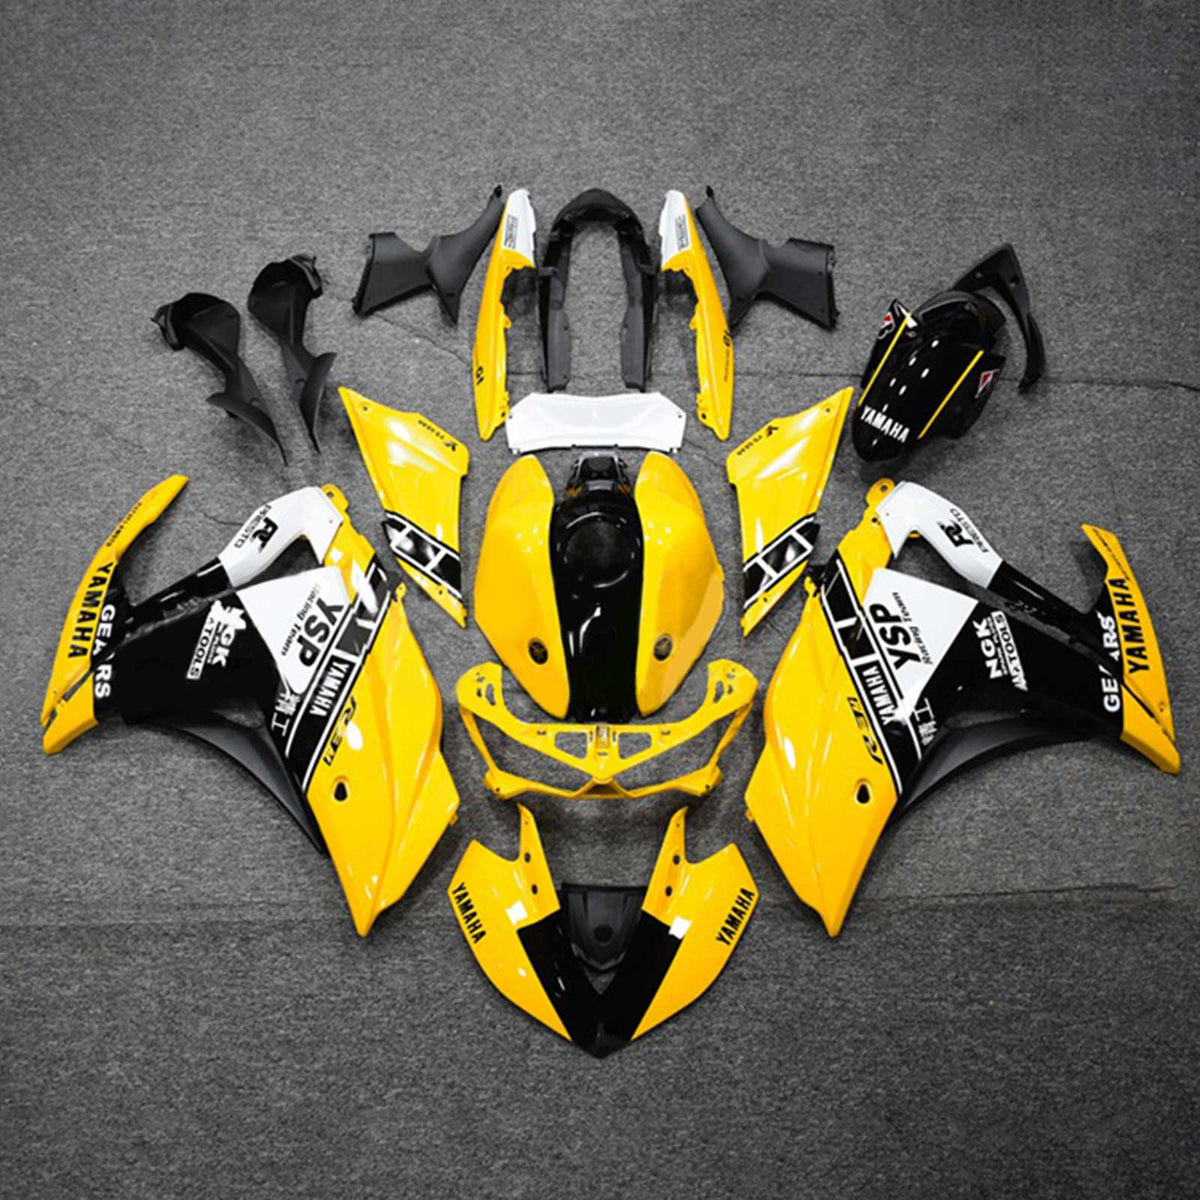 Kit carena Amotopart Yamaha 2014-2018 YZF R3 e 2015-2017 YZF R25 Kit carena giallo nero